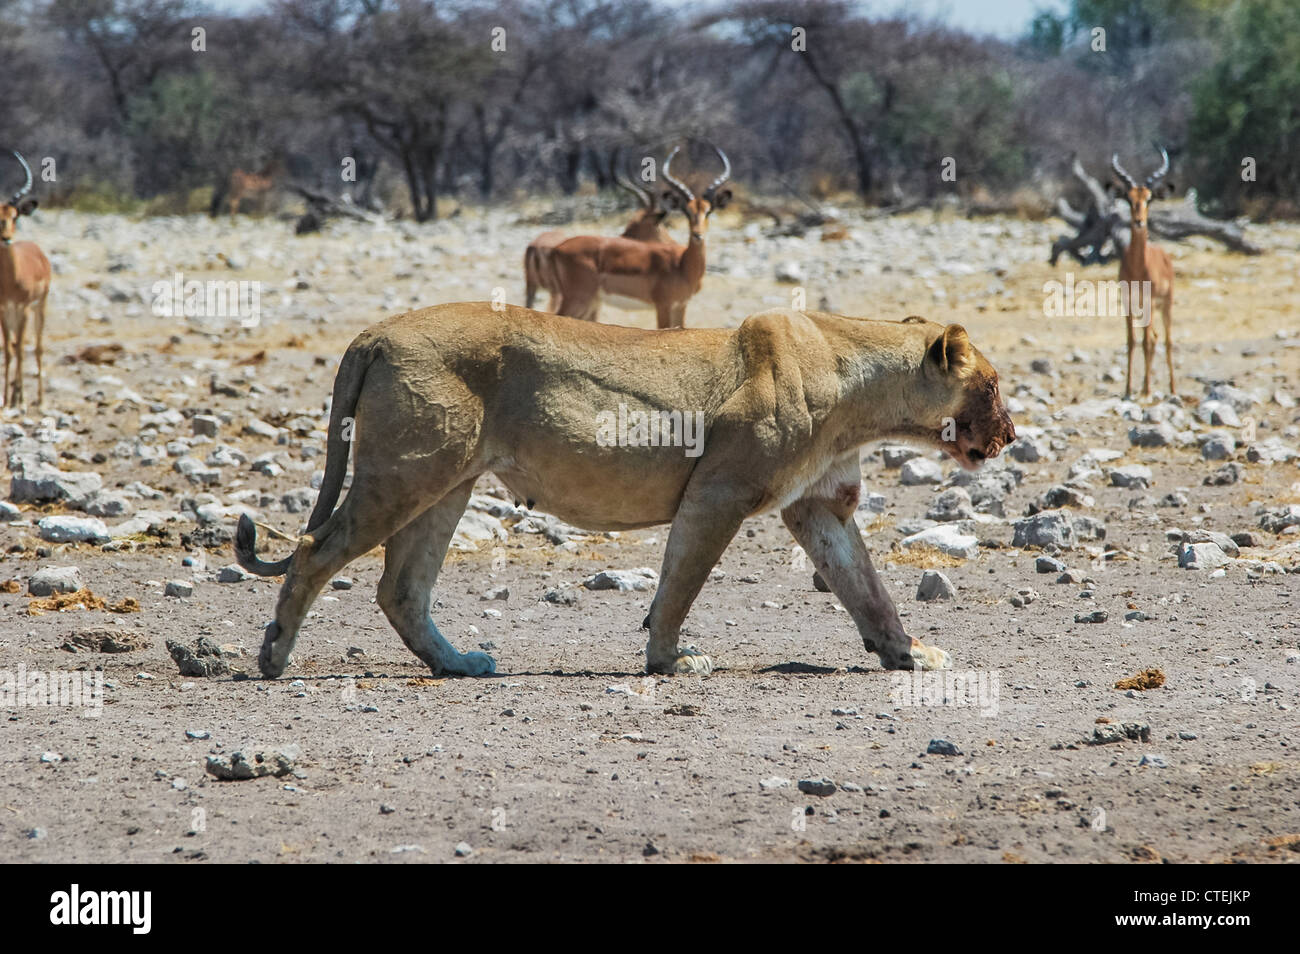 Lioness (Panthera leo) in the Etosha National Park, Namibia Stock Photo